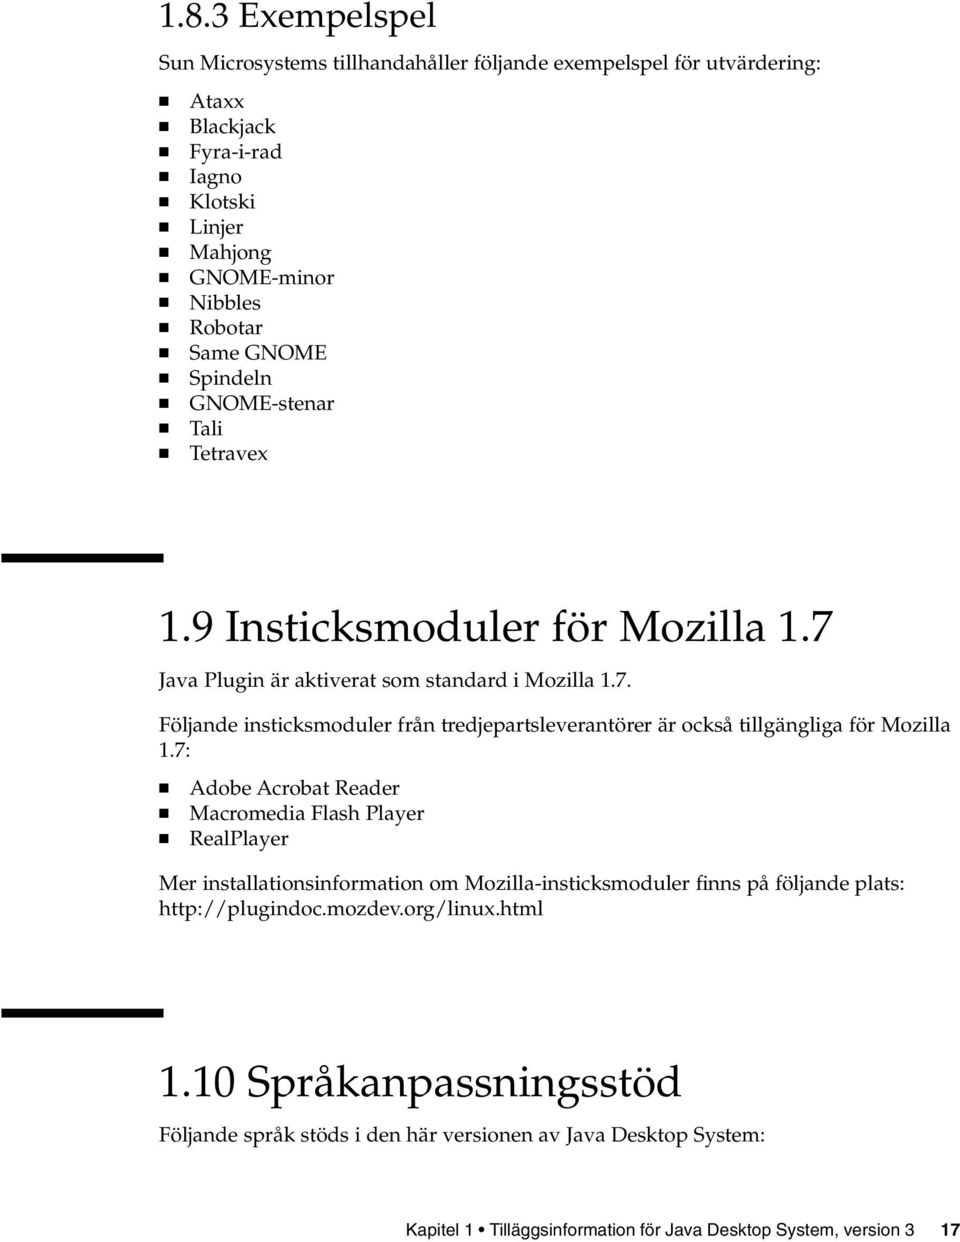 7: Adobe Acrobat Reader Macromedia Flash Player RealPlayer Mer installationsinformation om Mozilla-insticksmoduler finns på följande plats: http://plugindoc.mozdev.org/linux.html 1.